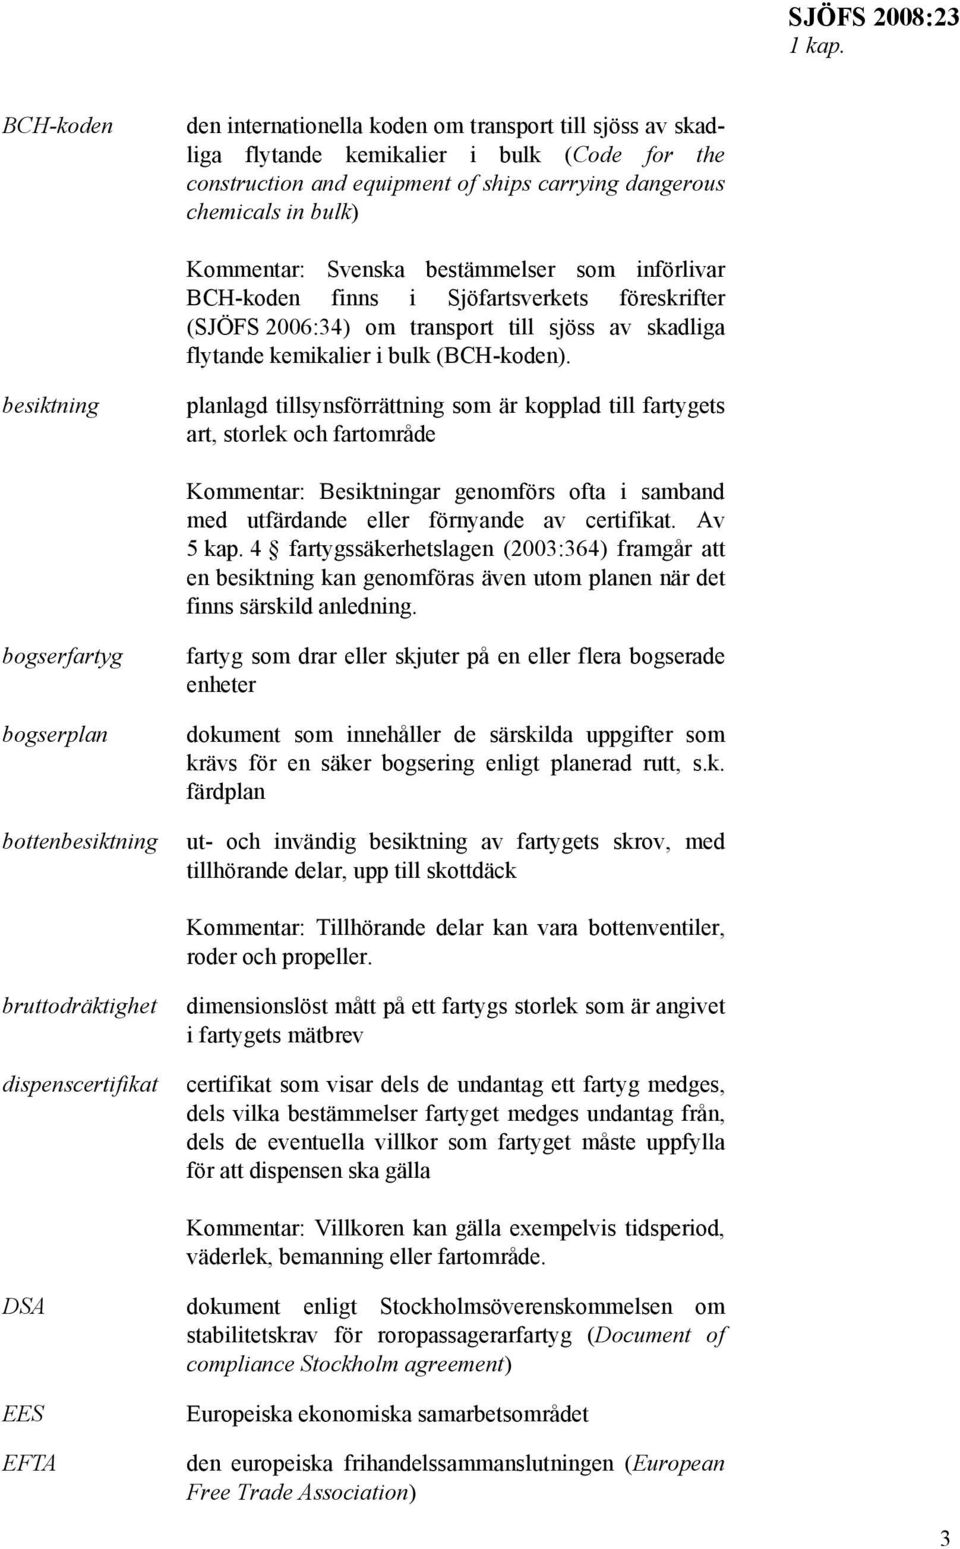 Svenska bestämmelser som införlivar BCH-koden finns i Sjöfartsverkets föreskrifter (SJÖFS 2006:34) om transport till sjöss av skadliga flytande kemikalier i bulk (BCH-koden).